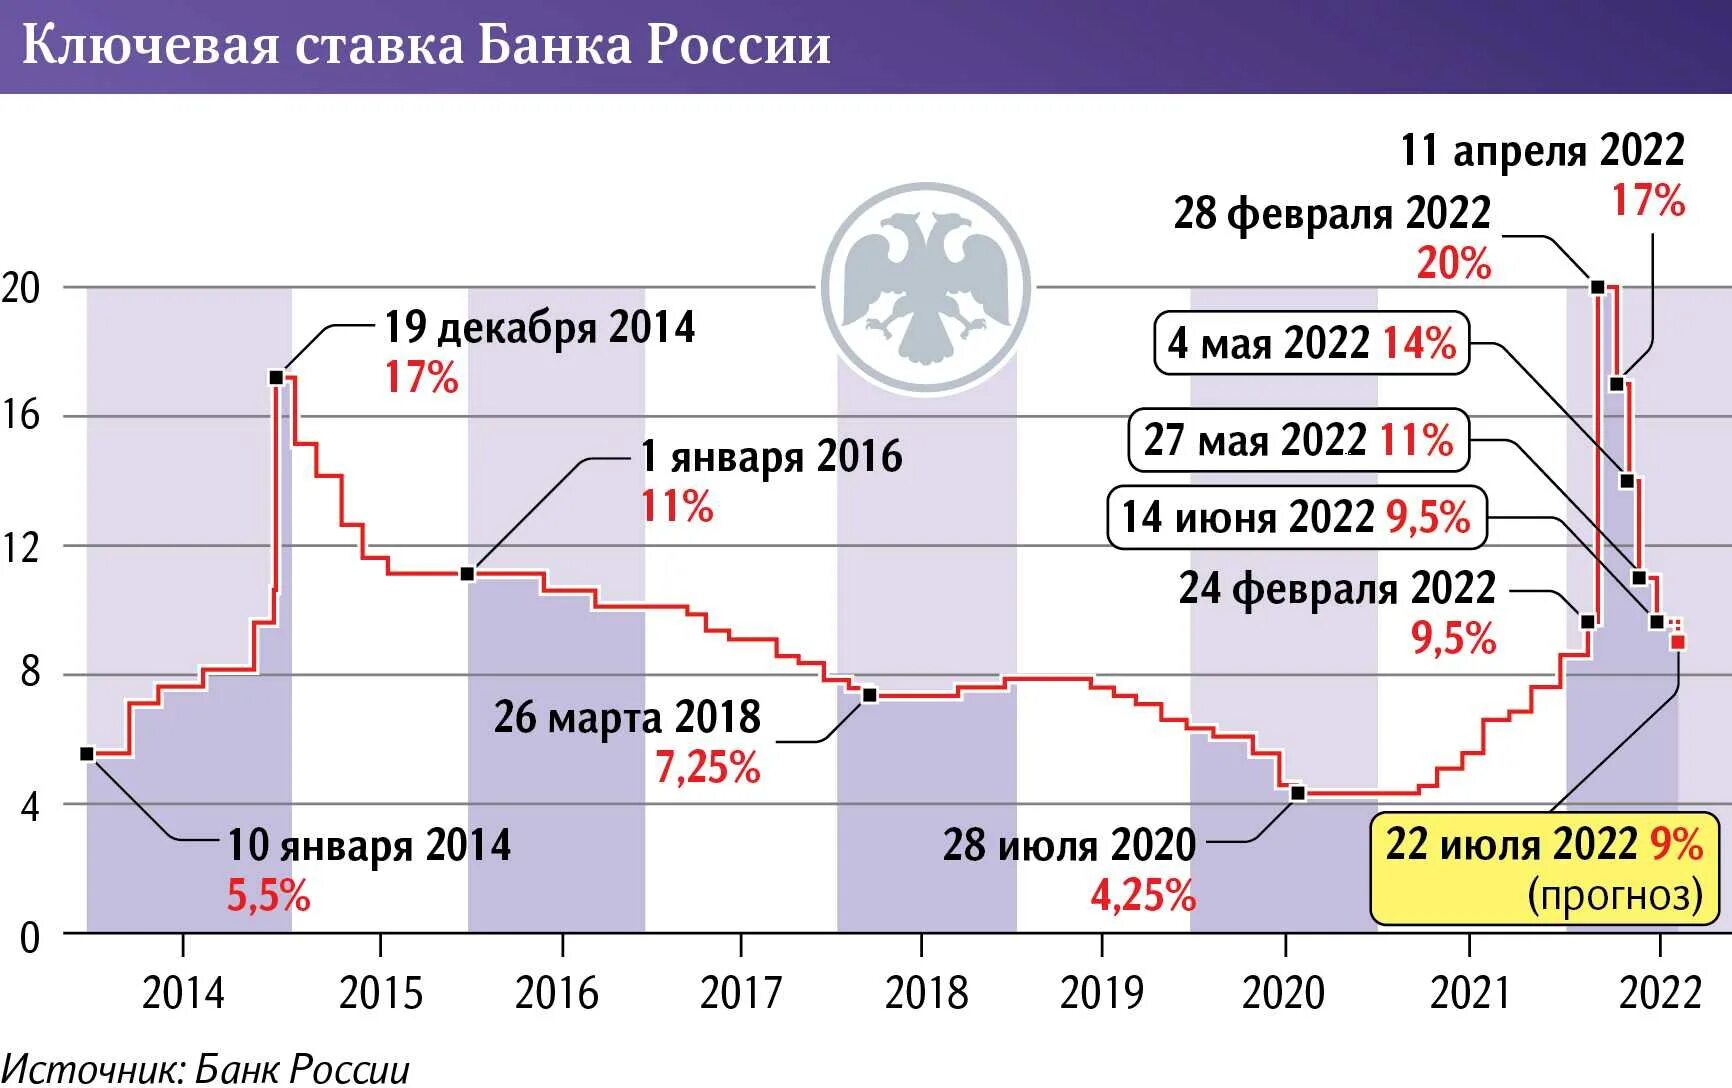 Новый банк 2023. Динамика ключевой ставки РФ 2023. Ключевая ставка. Динамика ключевой ставки в РФ 2023 год. Ключевая ставка динамика.